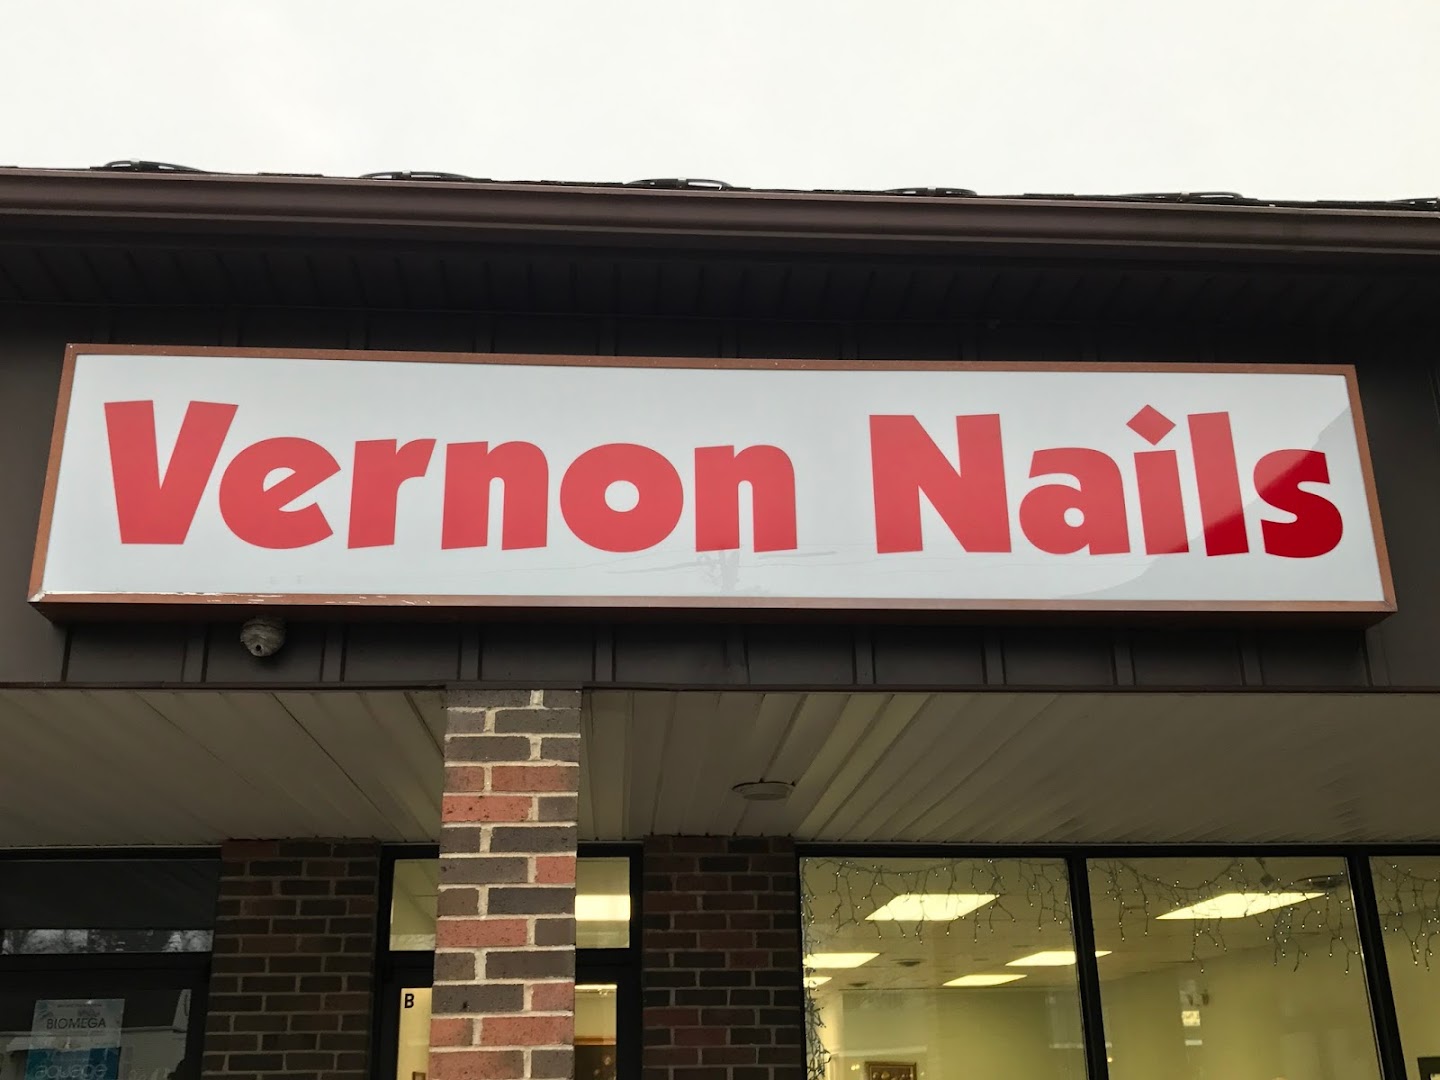 Vernon Nails